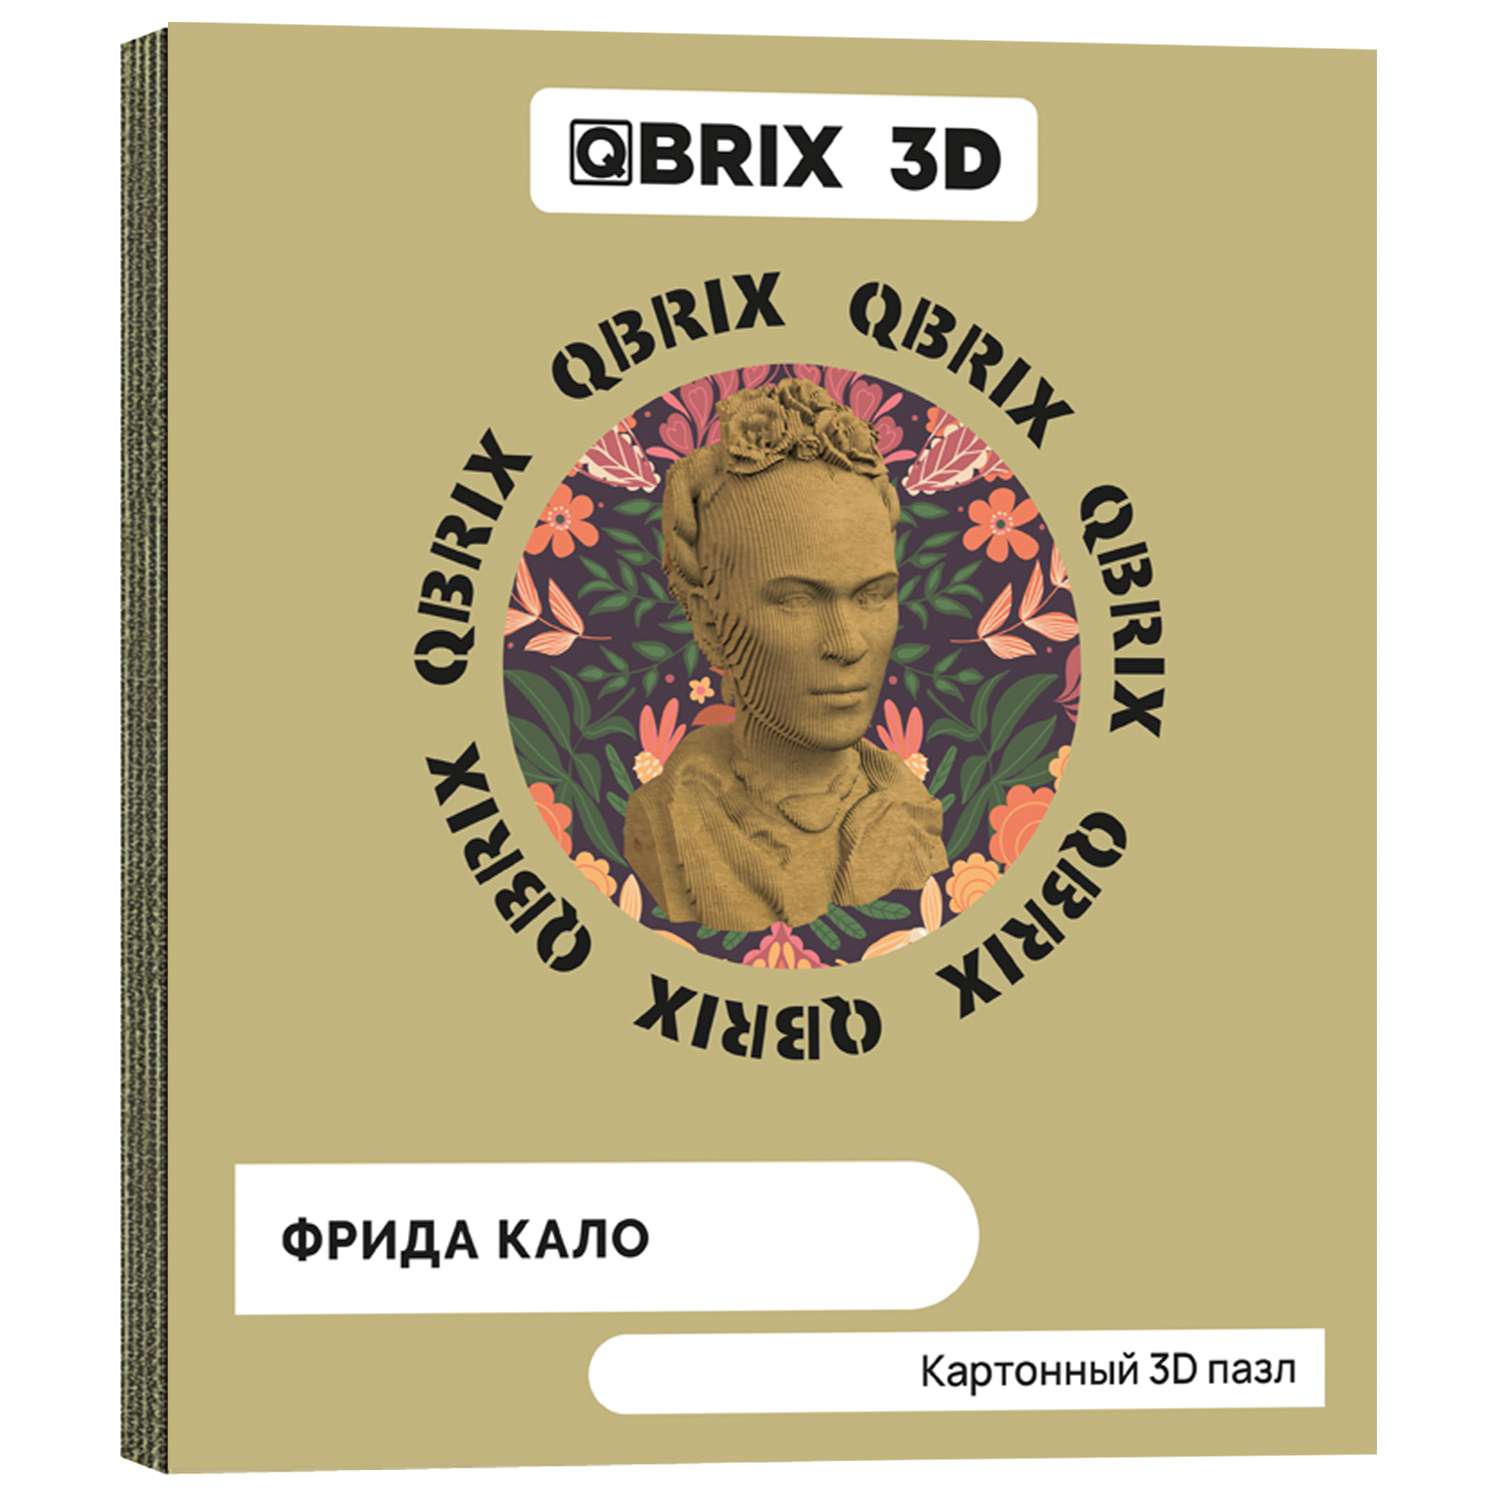 Конструктор QBRIX 3D картонный Фрида Кало 20026 20026 - фото 1